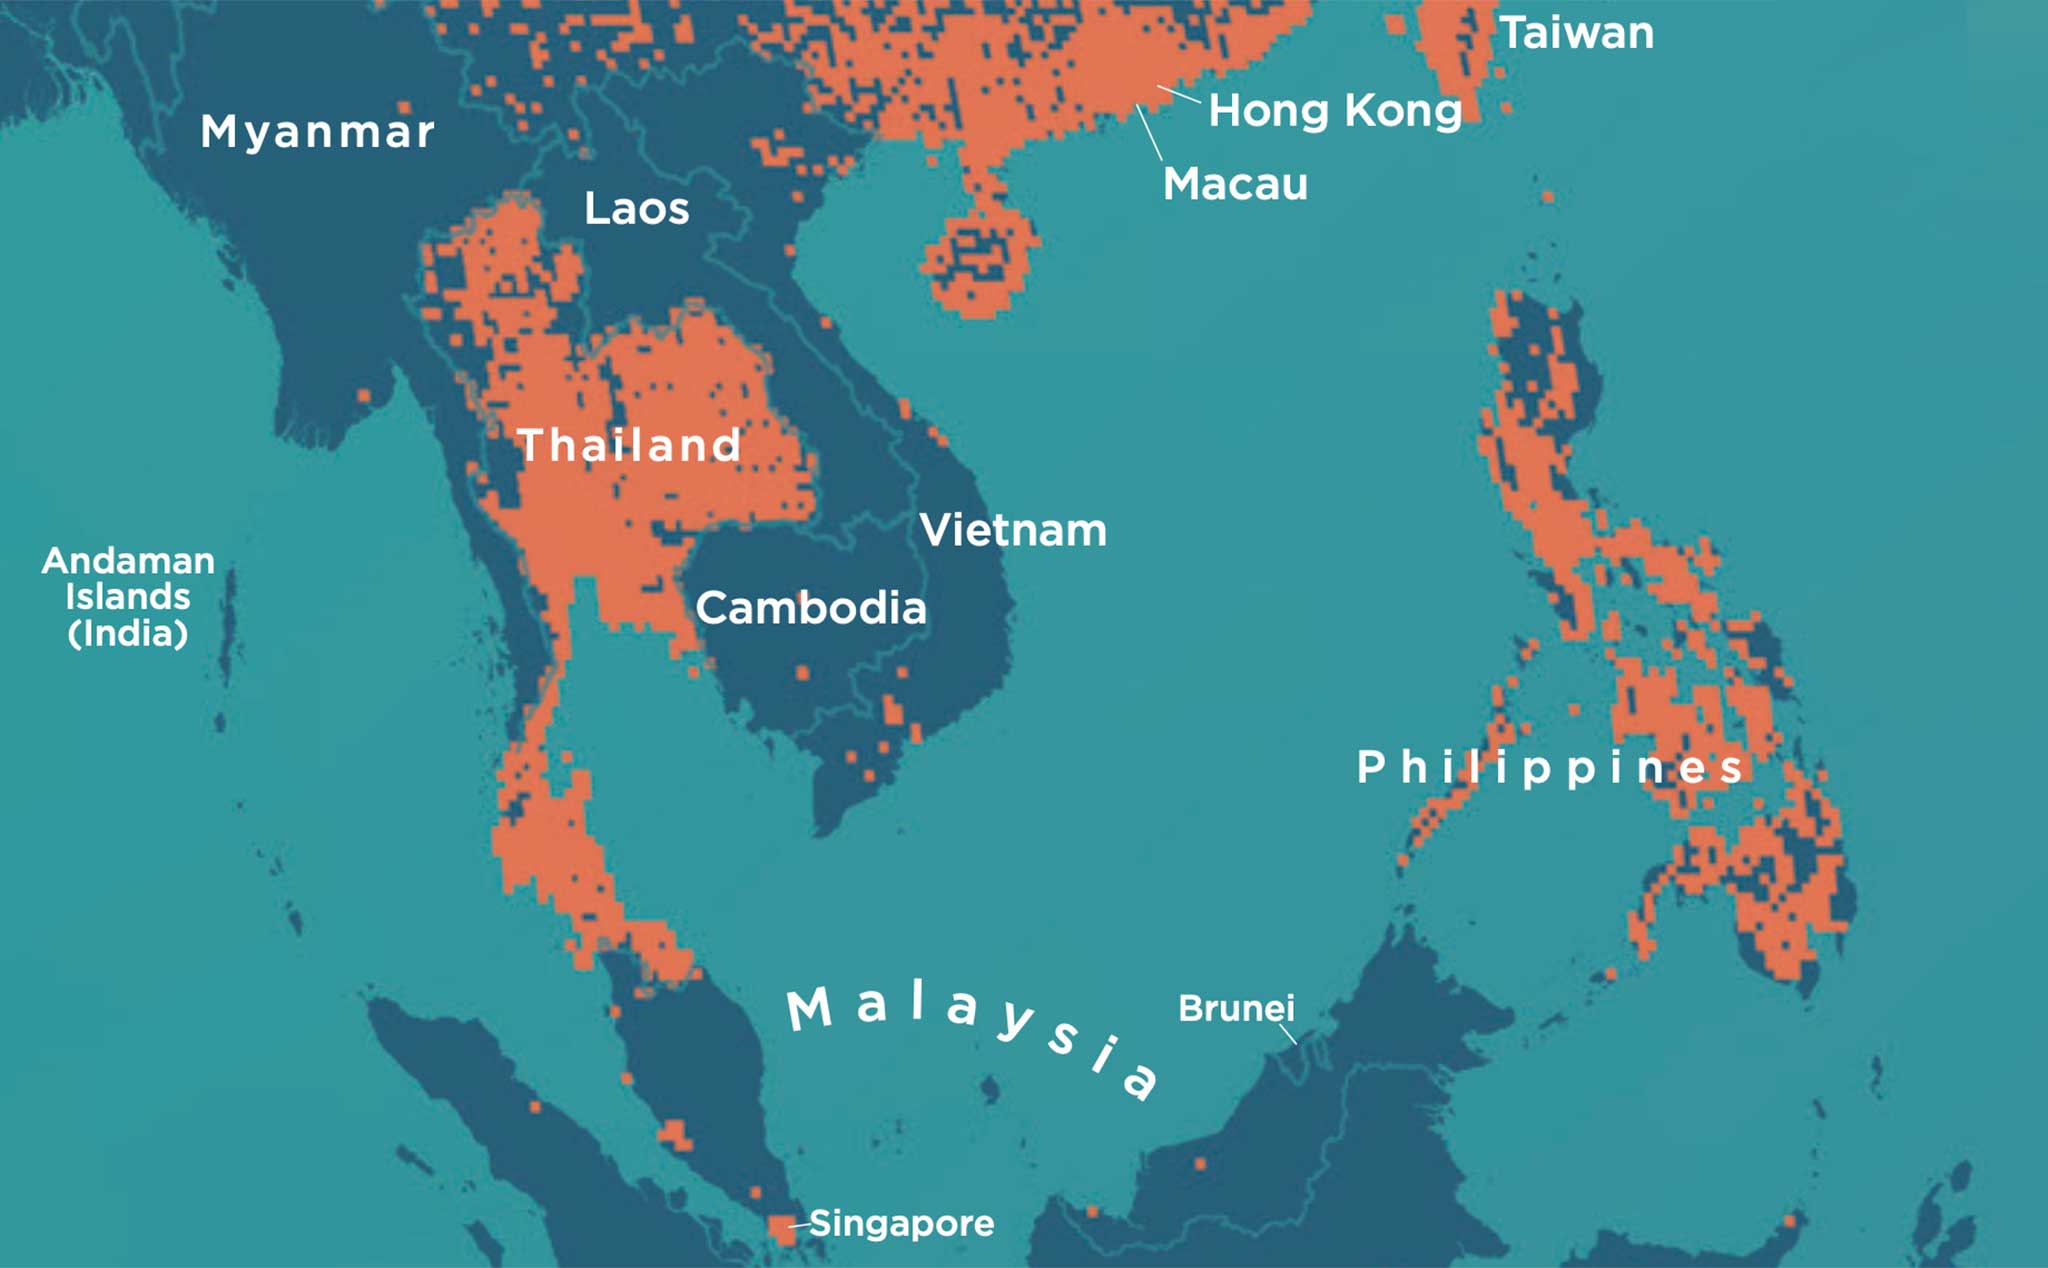 Xếp hạng phủ sóng 5G Đông Nam Á chưa bao giờ thú vị đến thế! Chúng tôi đã thực hiện các nghiên cứu toàn diện để giúp bạn đánh giá và tìm hiểu về hệ thống mạng 5G tốt nhất và ổn định nhất. Hãy đồng hành cùng chúng tôi để khám phá thế giới kết nối của mình.